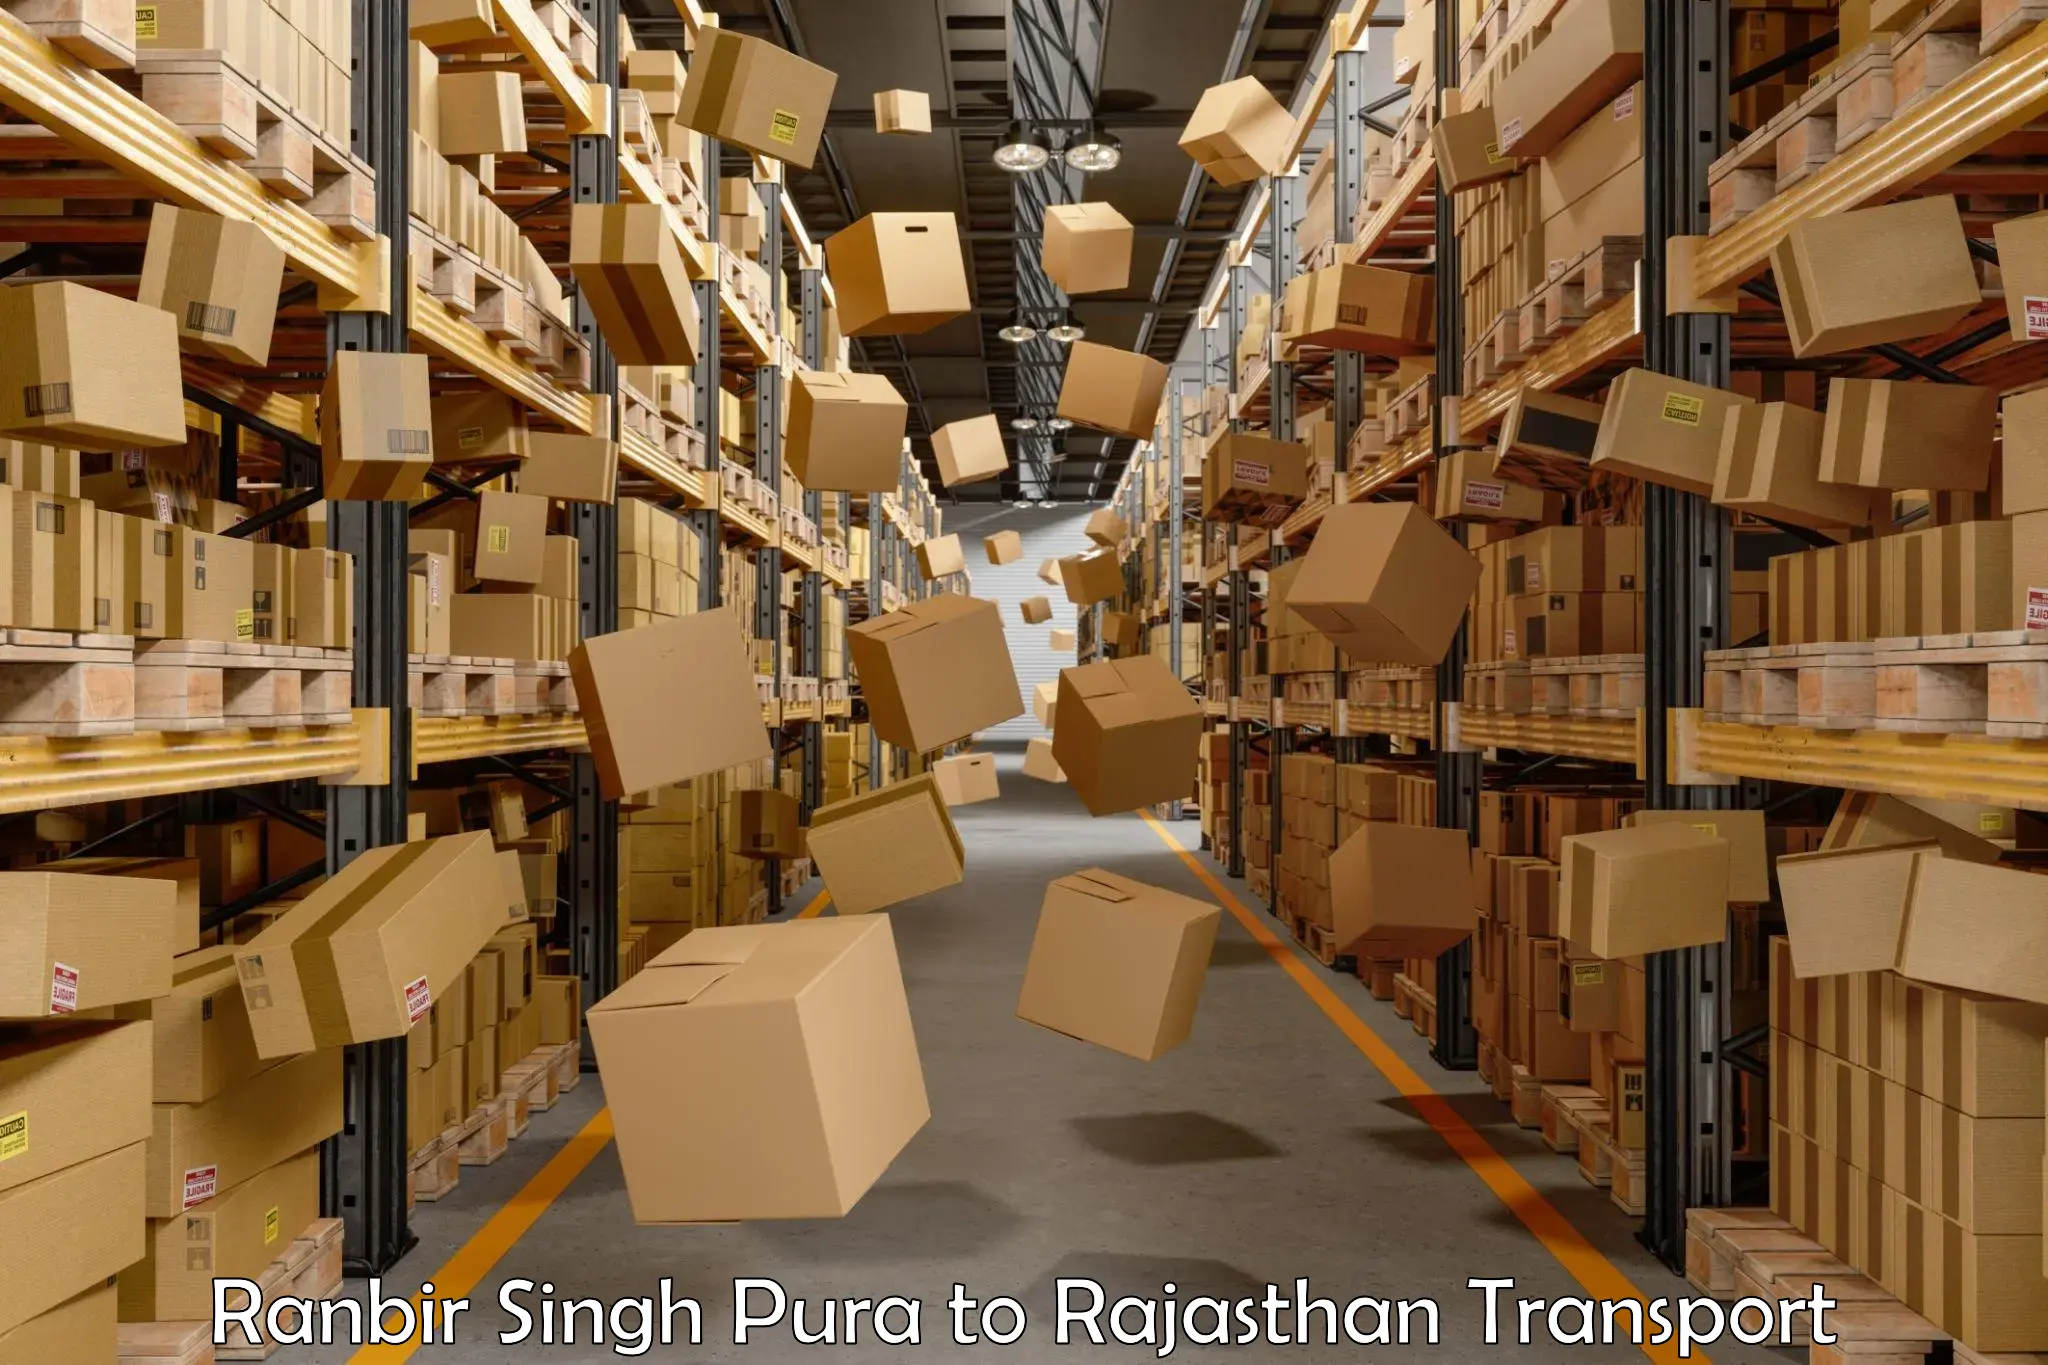 Delivery service Ranbir Singh Pura to Dholpur